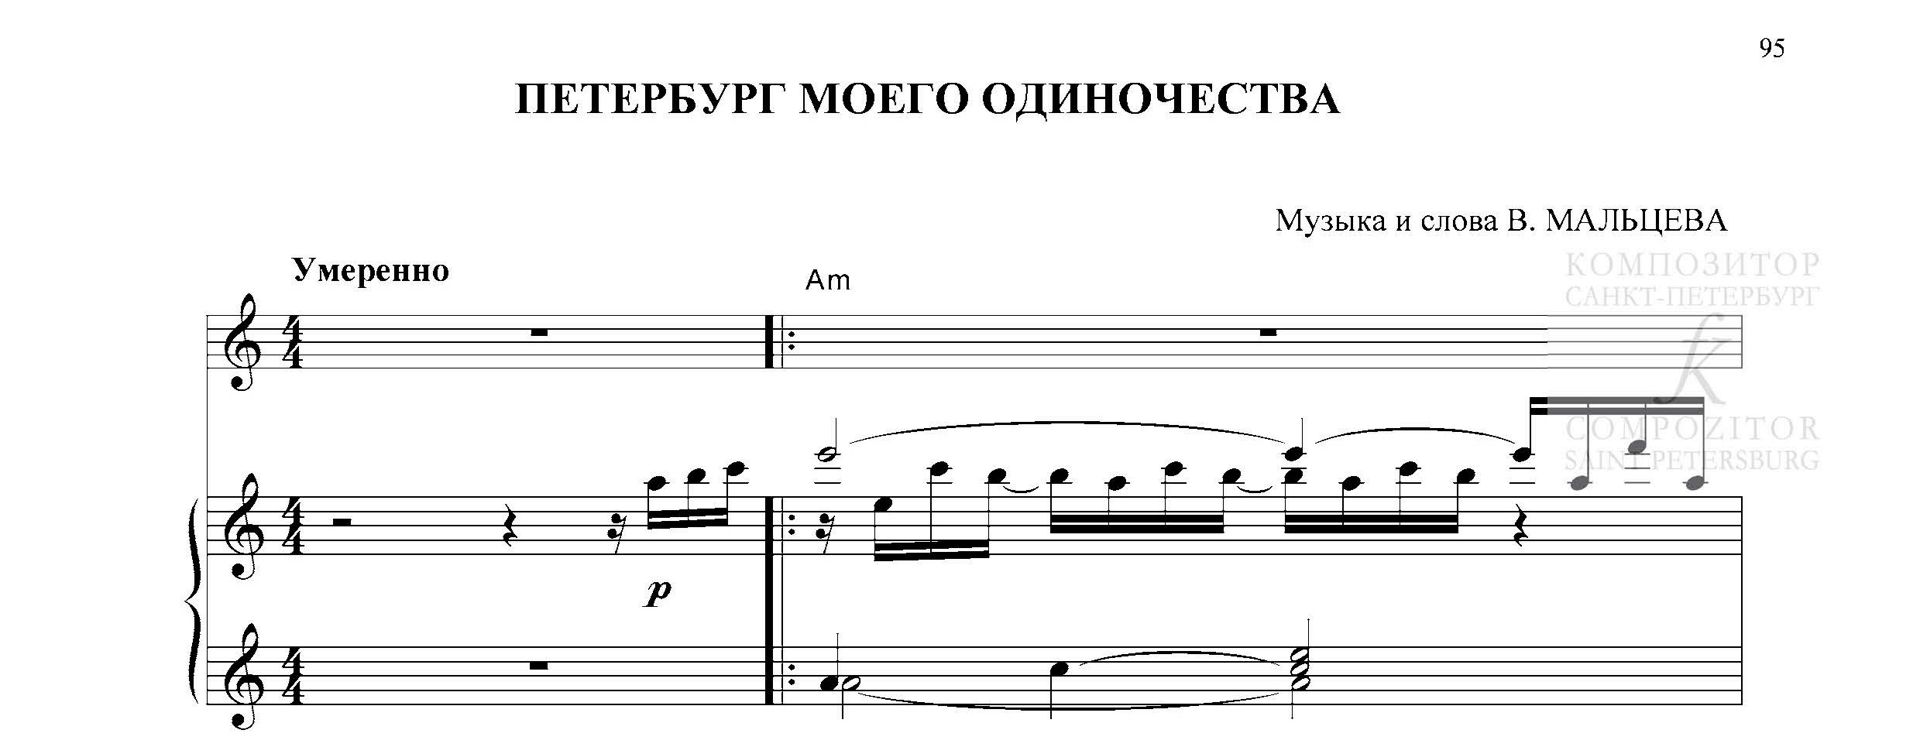 Петербург моего одиночества. Песня для голоса и фп. (гитары)